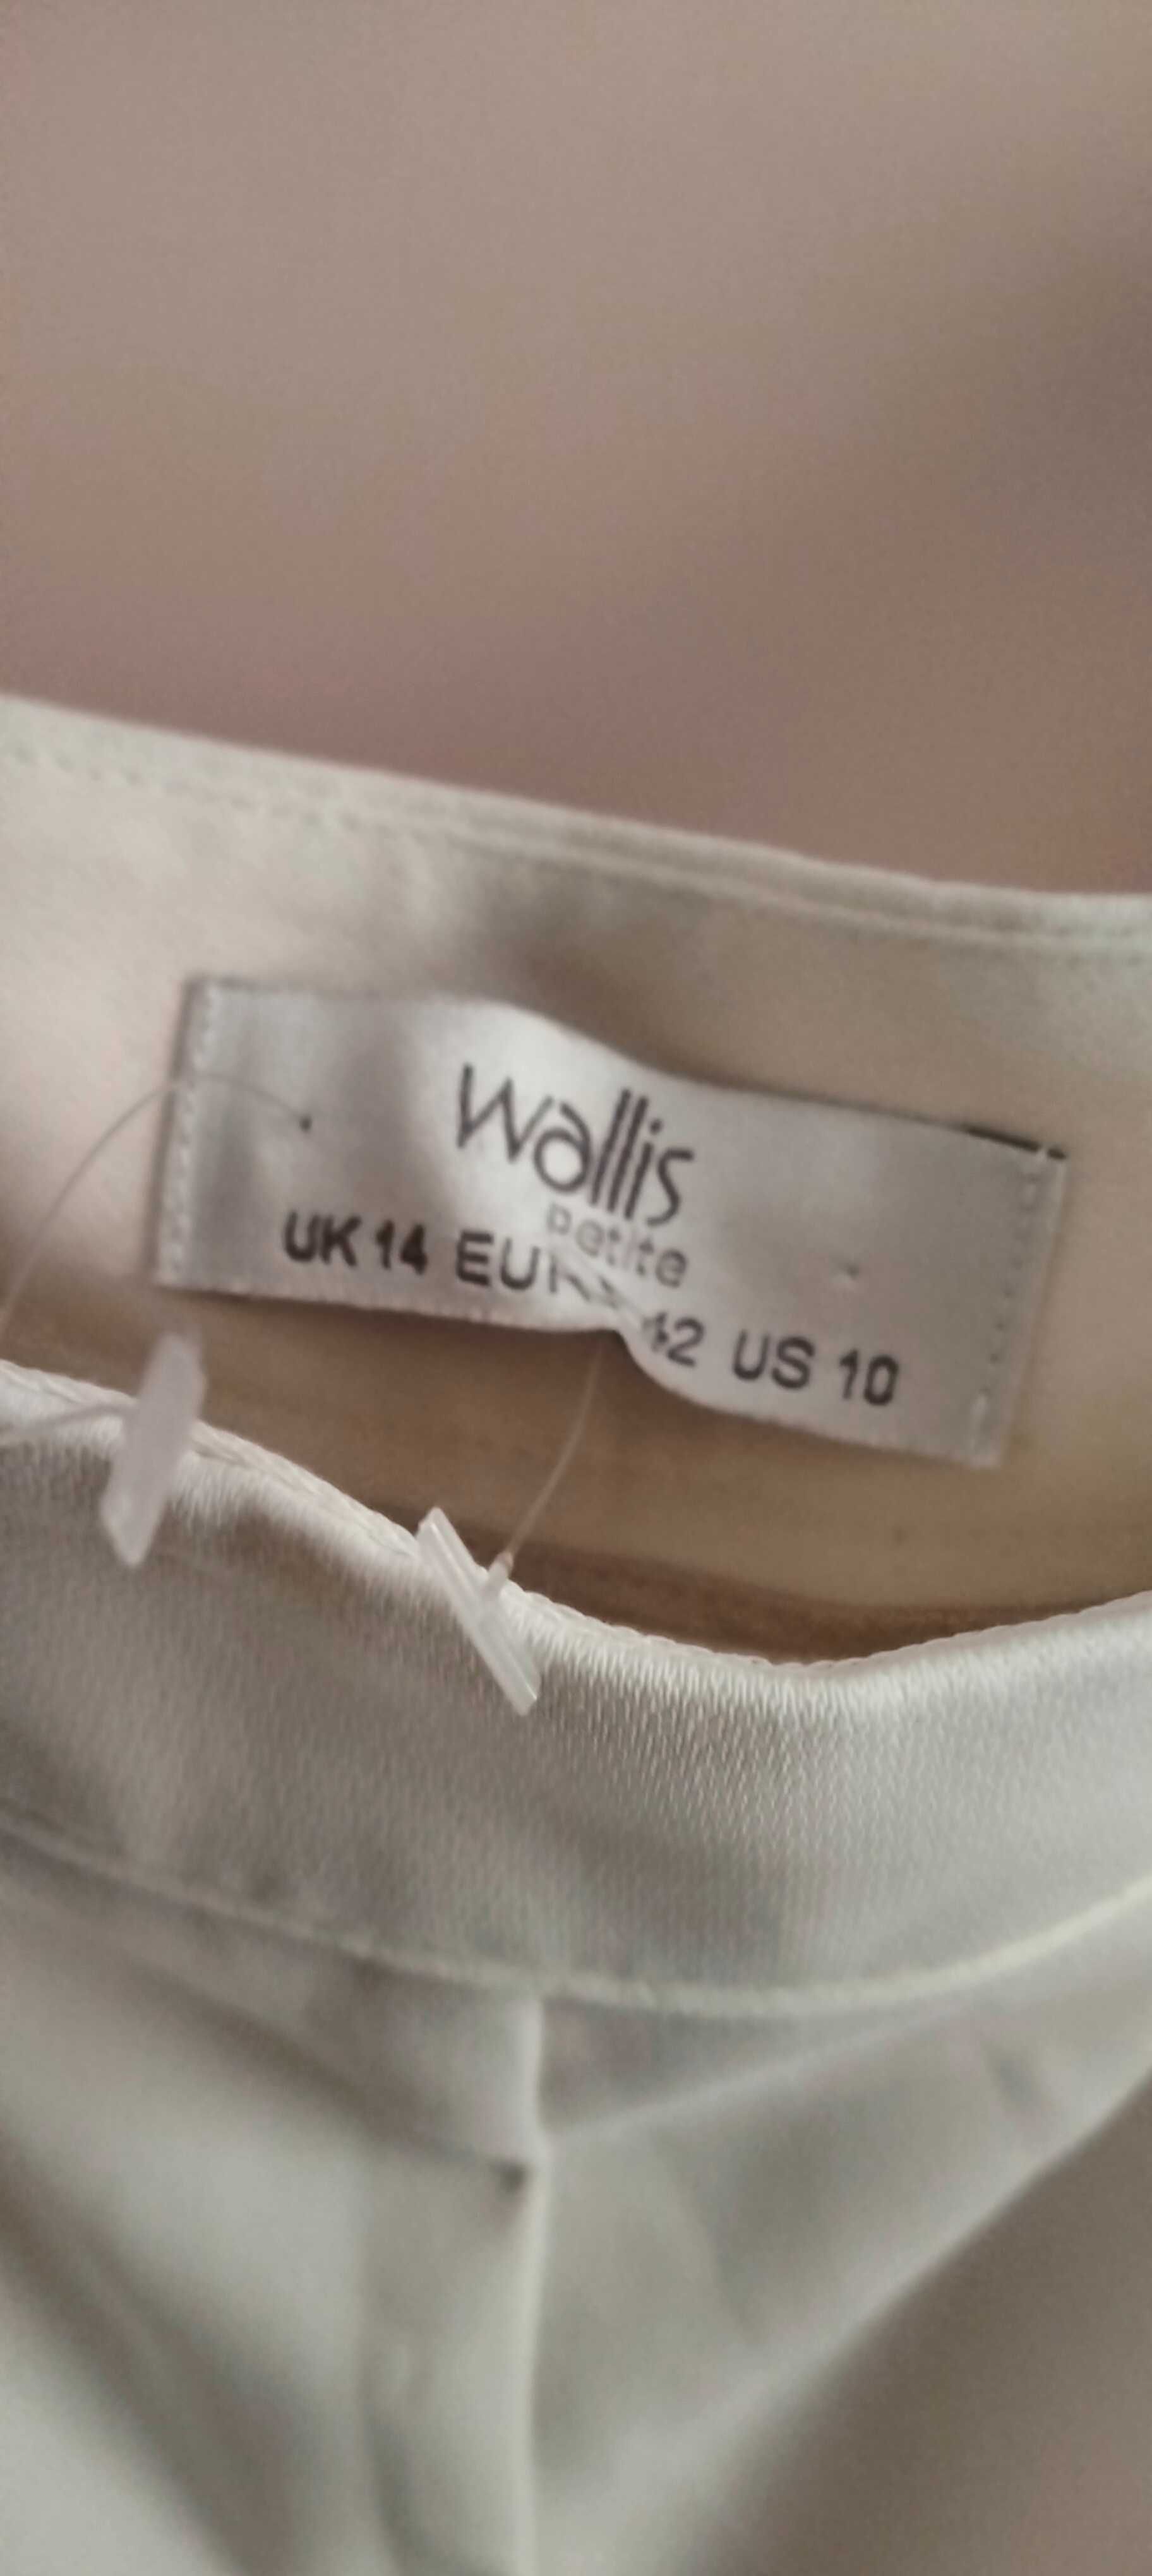 NOWE damskie eleganckie spodnie firmy Wallis Petite rozmiar 42